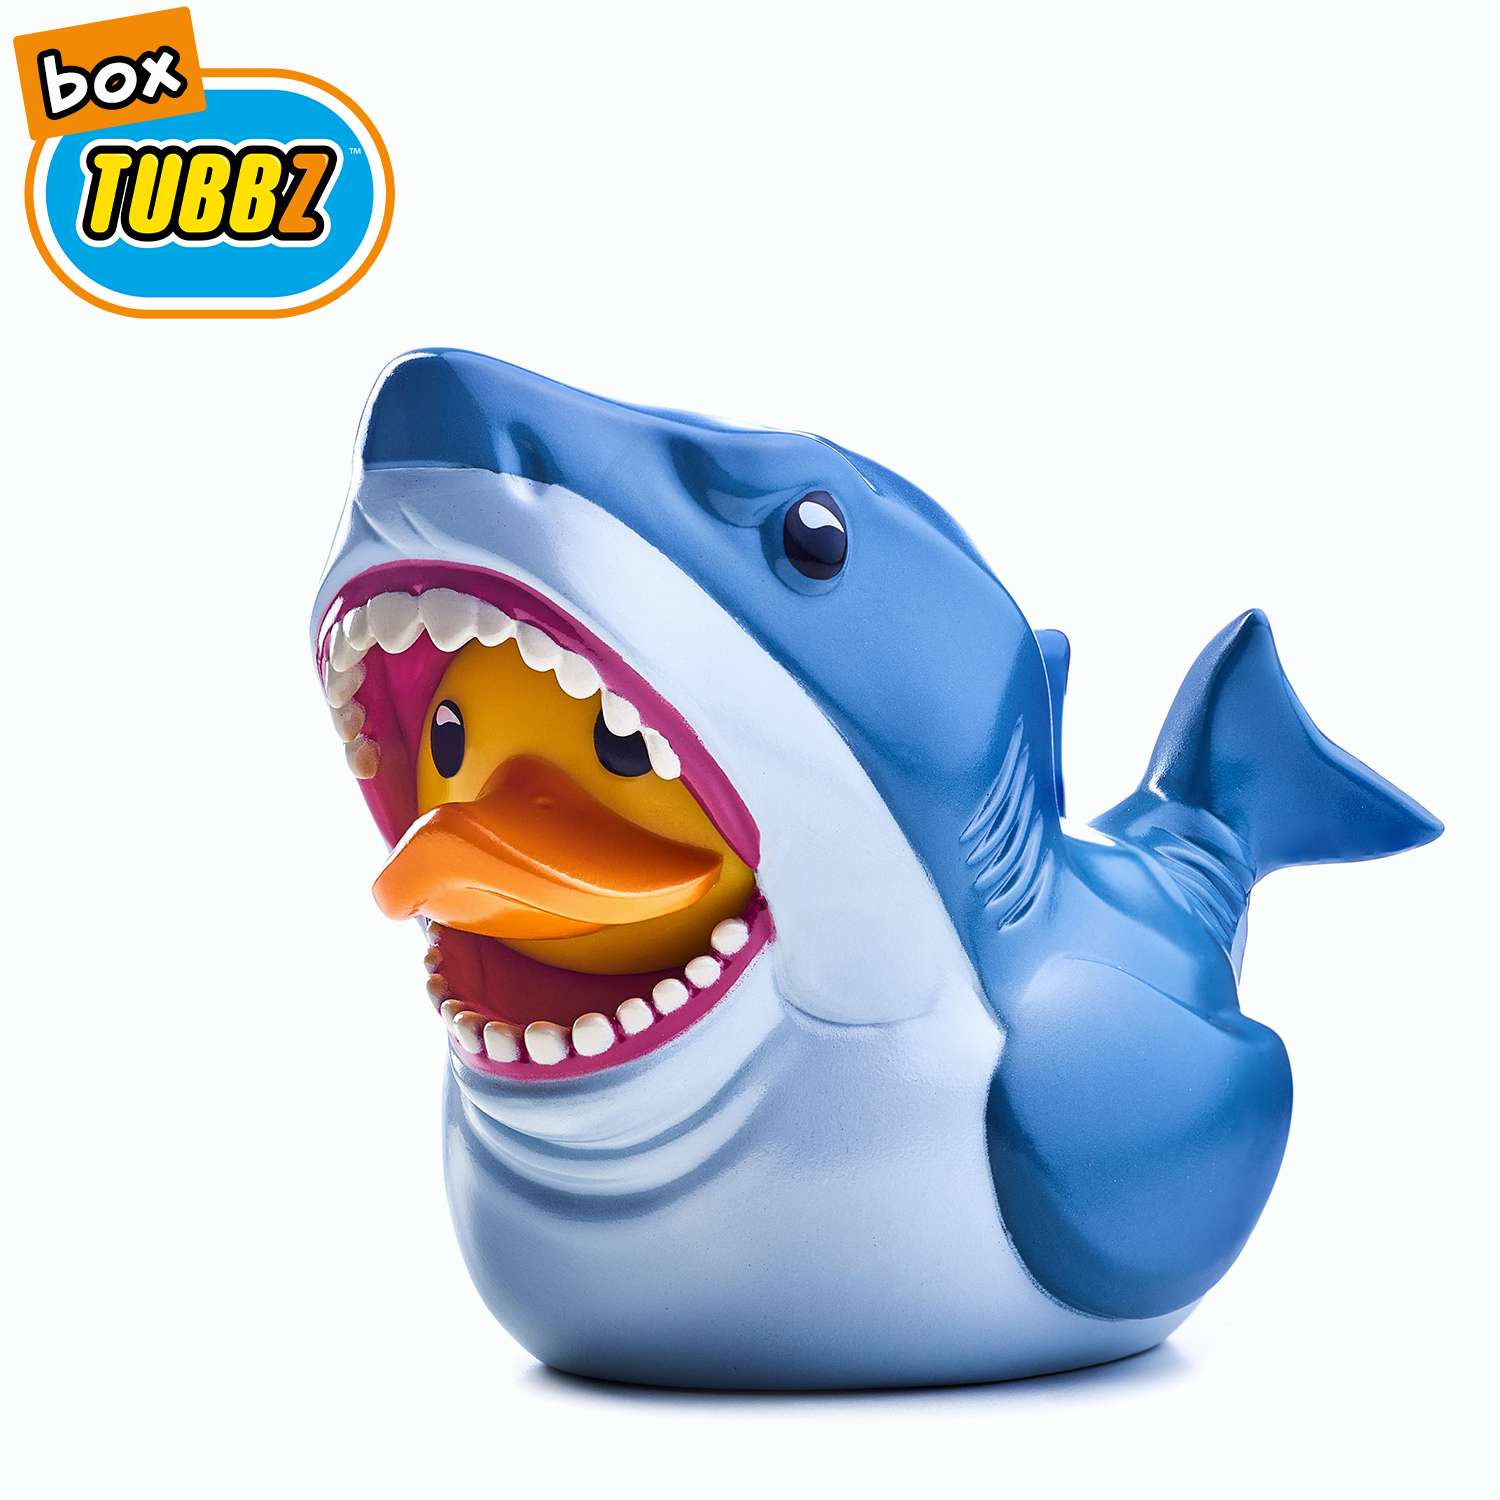 Фигурка JAWS Утка Tubbz акула Брюс из Челюсти Boxed Edition без ванны - фото 1